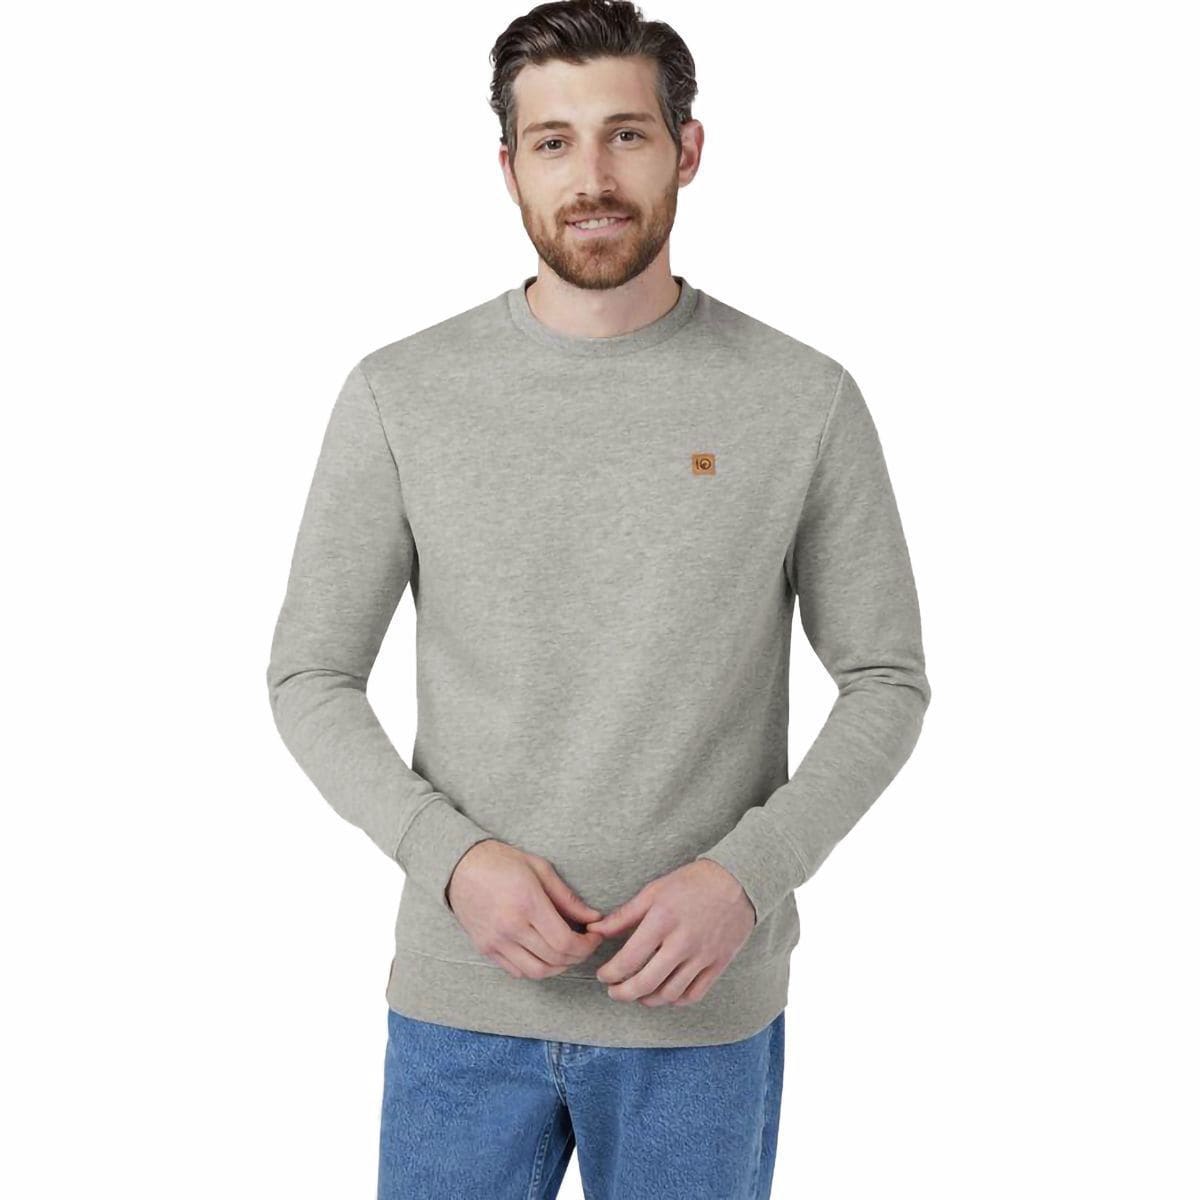 Tentree Standard Crew Sweatshirt - Men's - Clothing